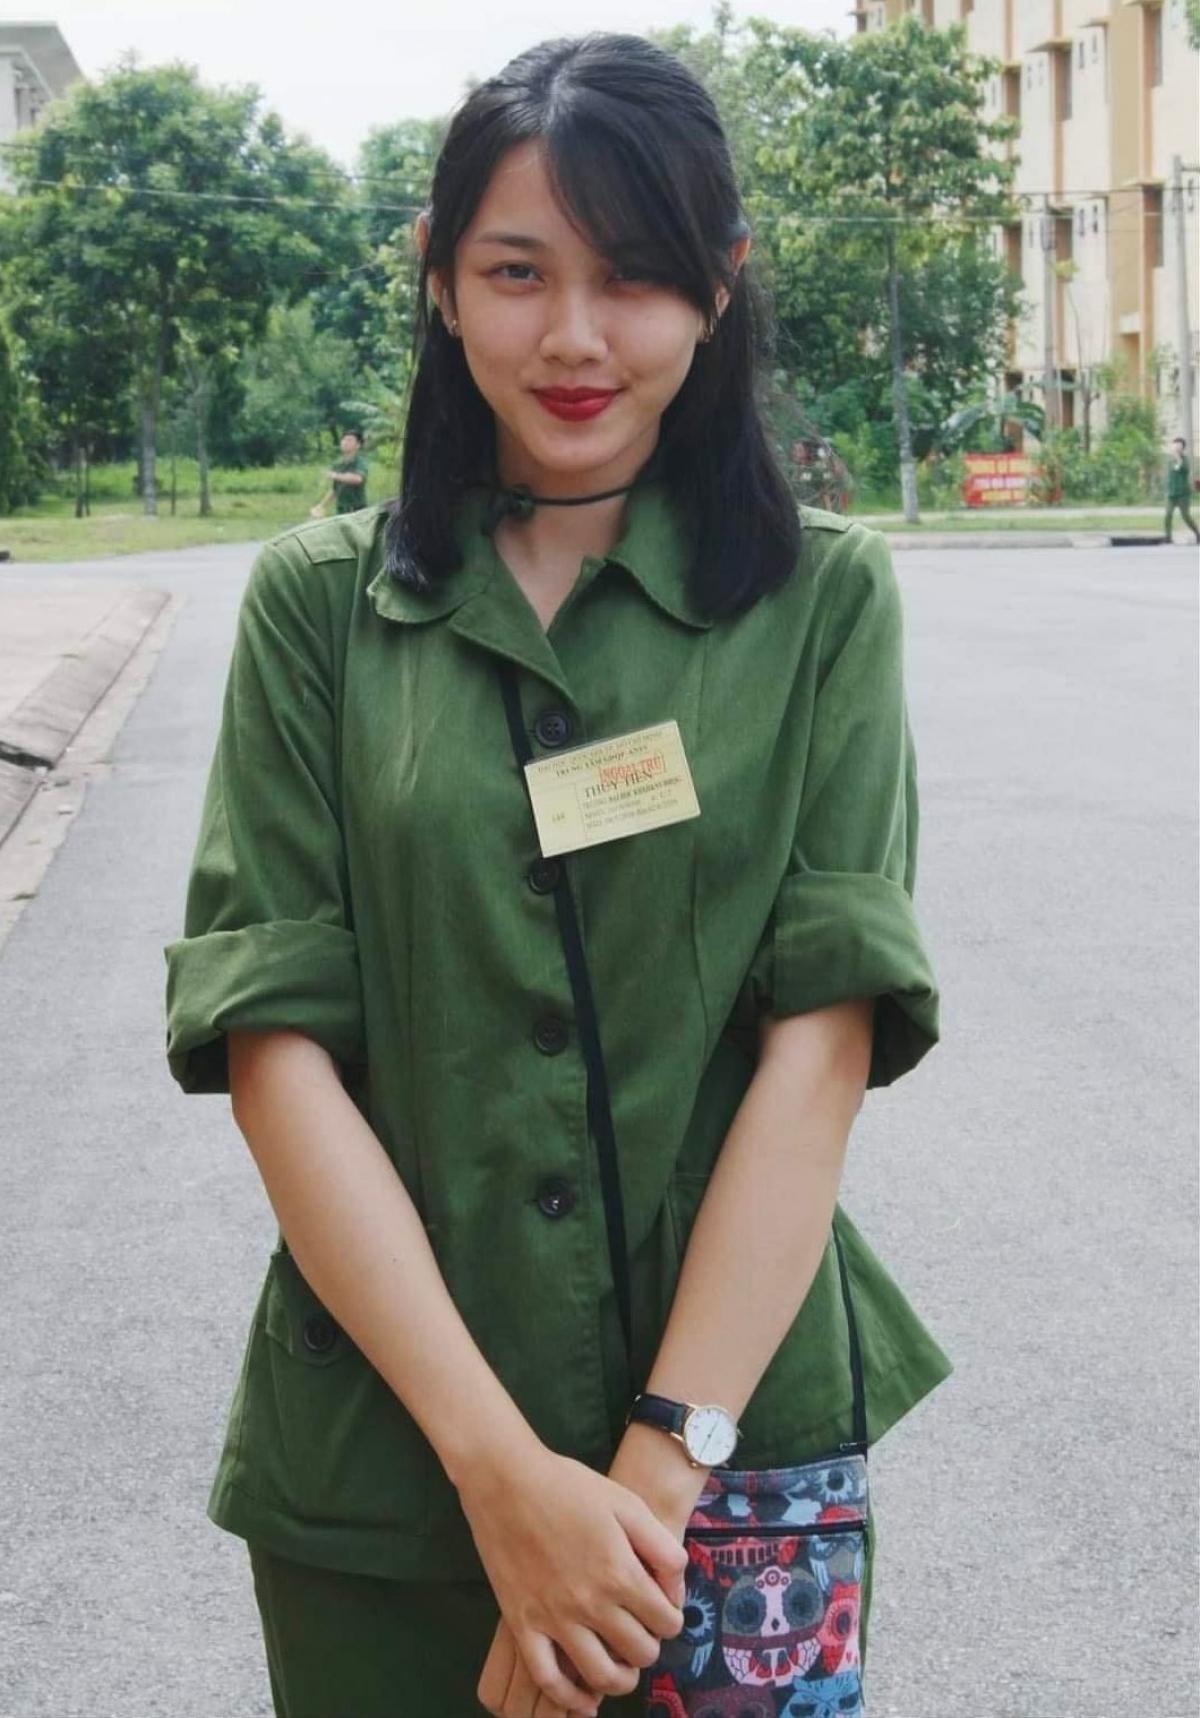 Thuỳ Tiên trong khoá học quân sự khi là sinh viên năm nhất trường Đại học Khoa học xã hội và nhăn văn. Ảnh: Truyền thông REC